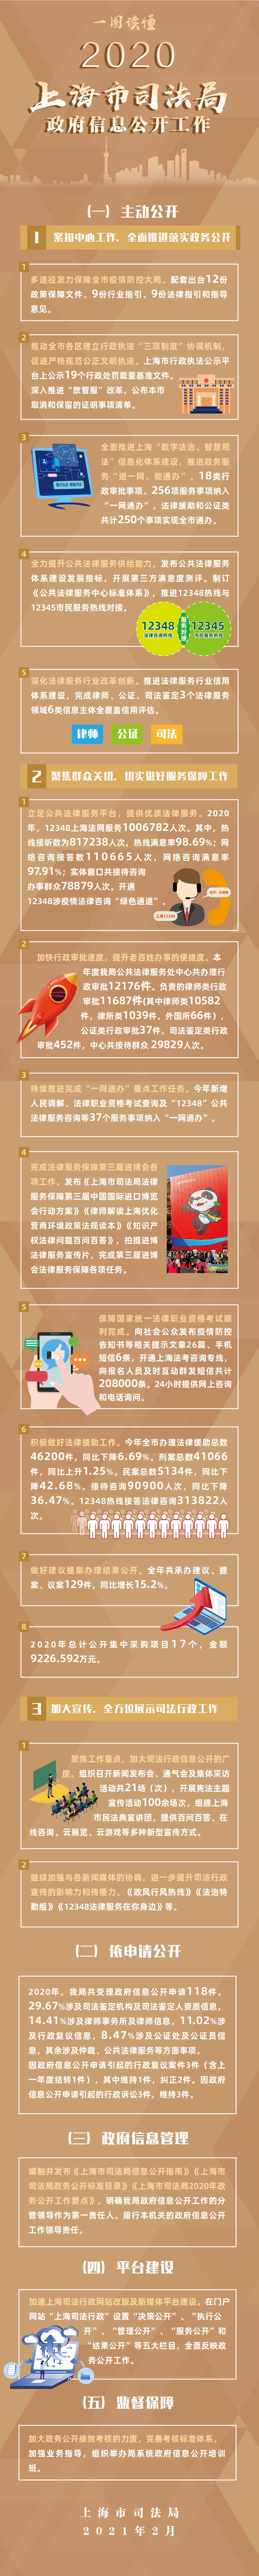 一图读懂《2020年上海市司法局政府信息公开工作年报》.jpg